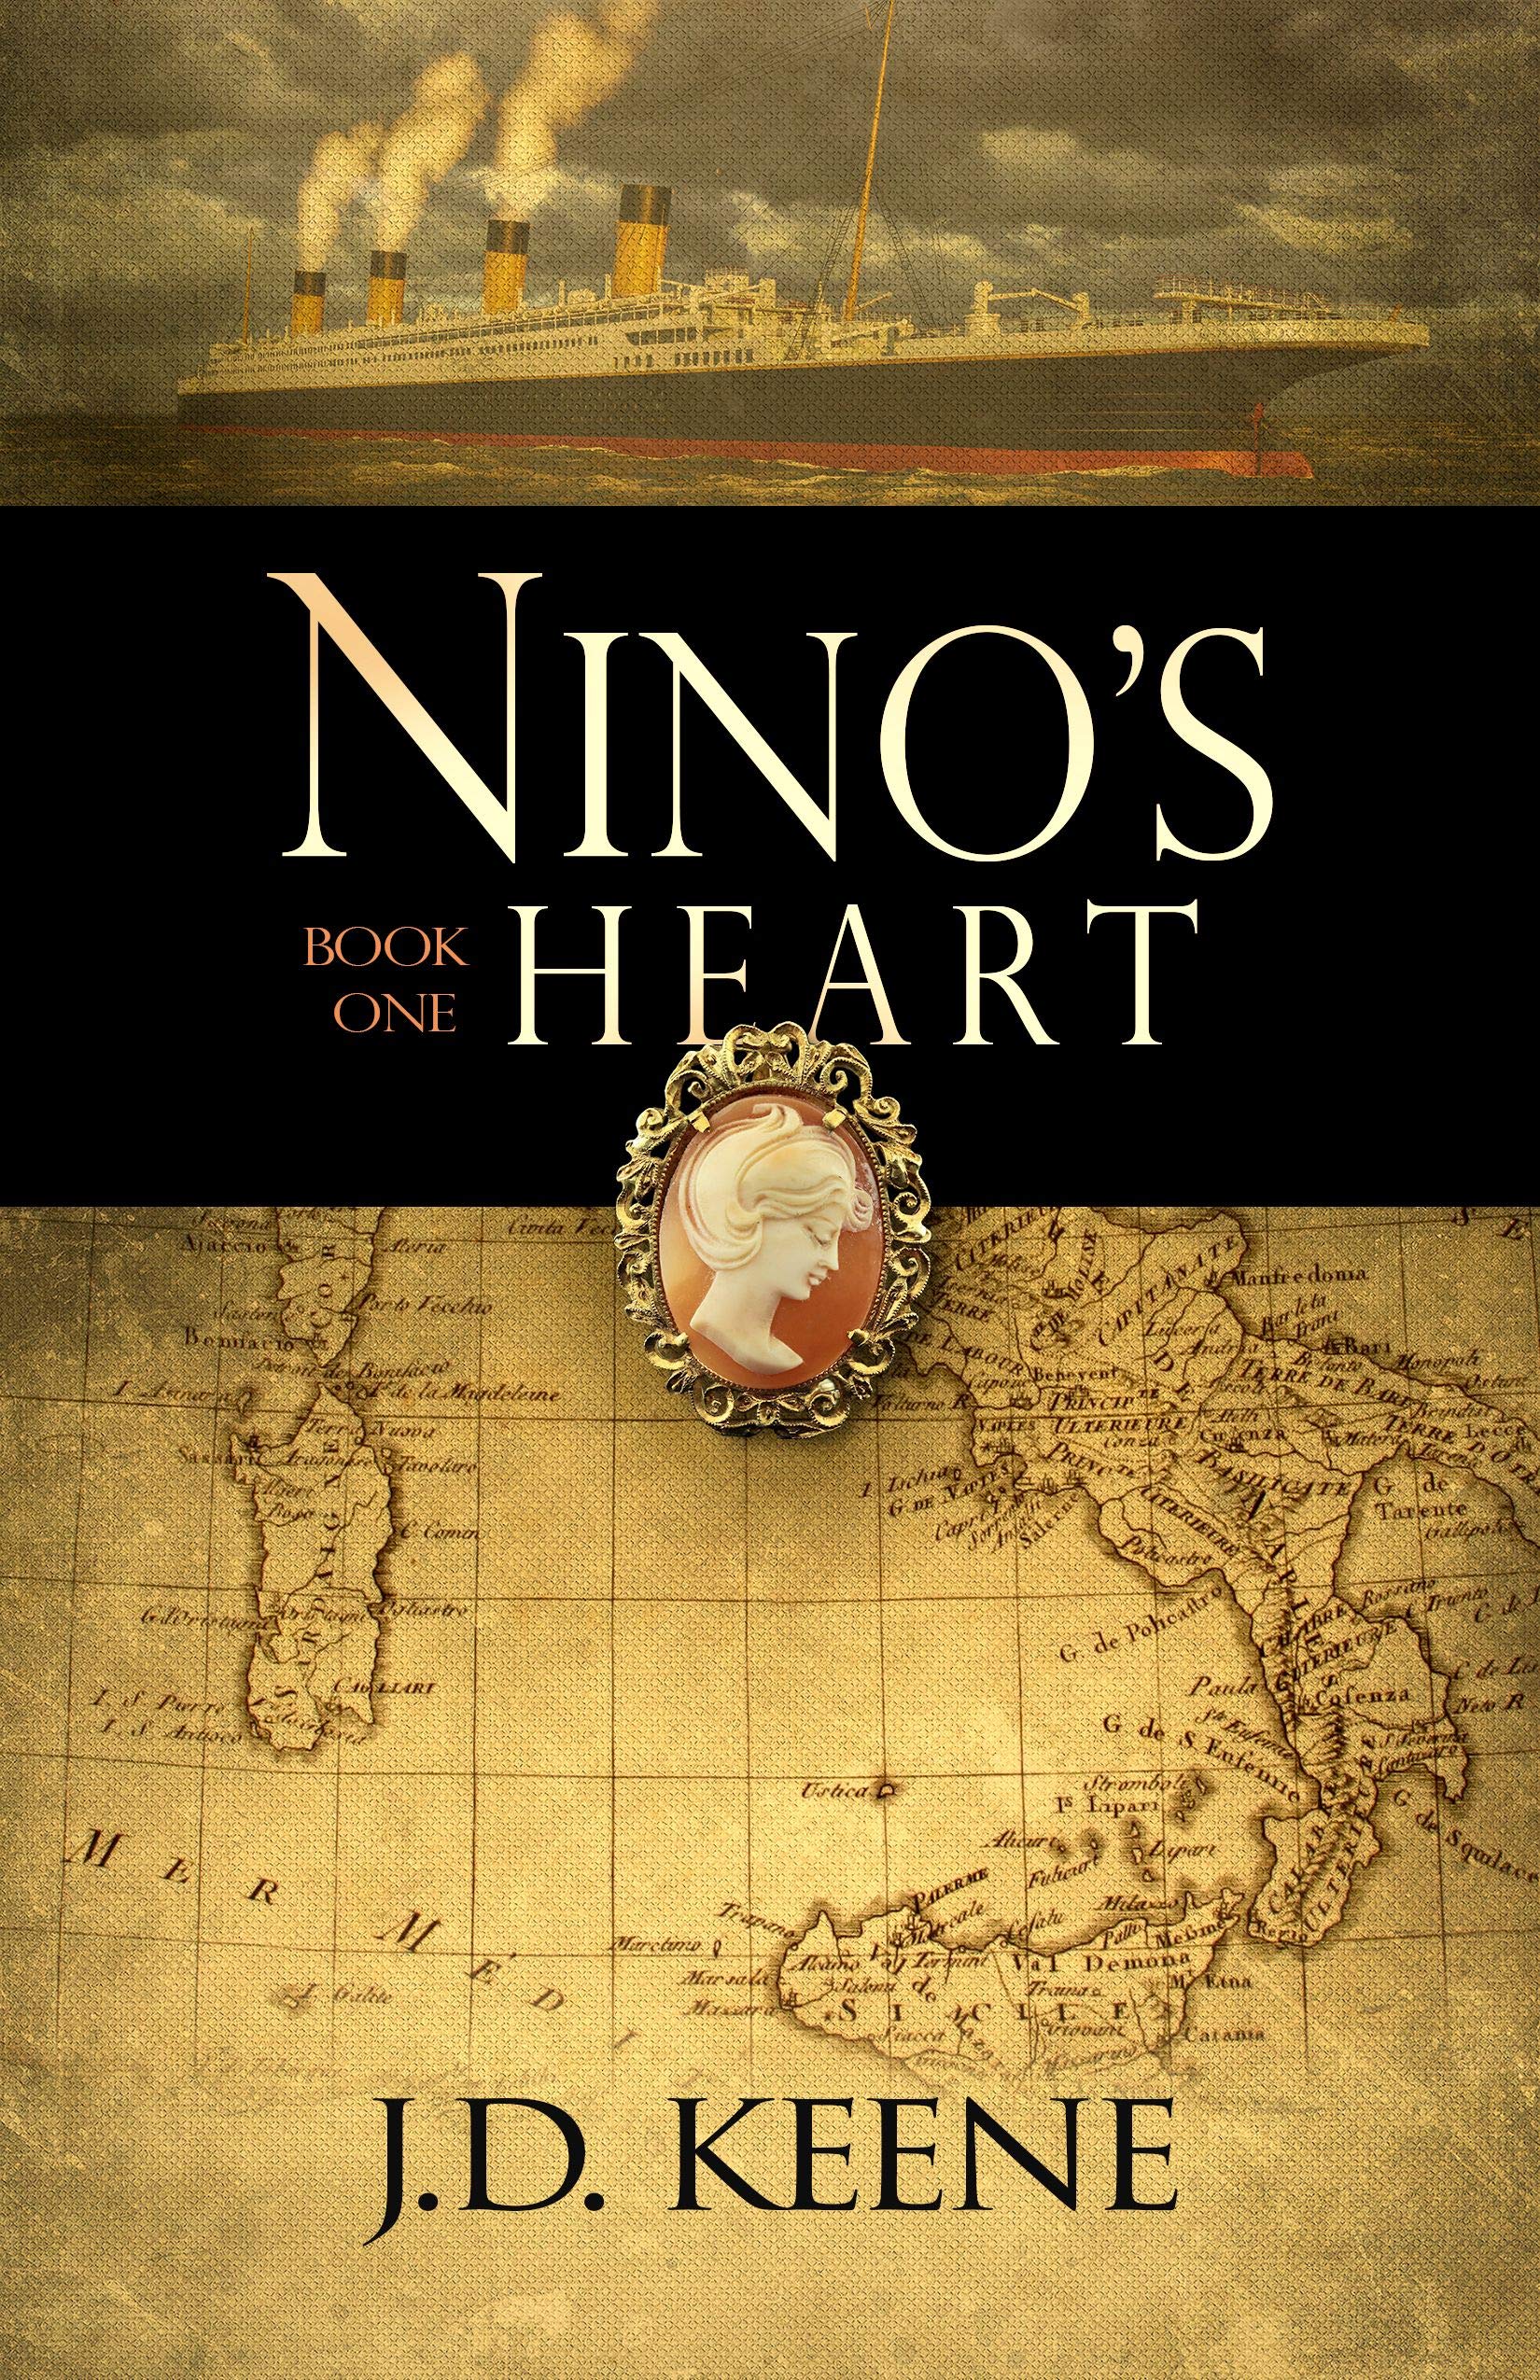 Nino's Heart: A novel of love and suspense set in WW2 Italy.